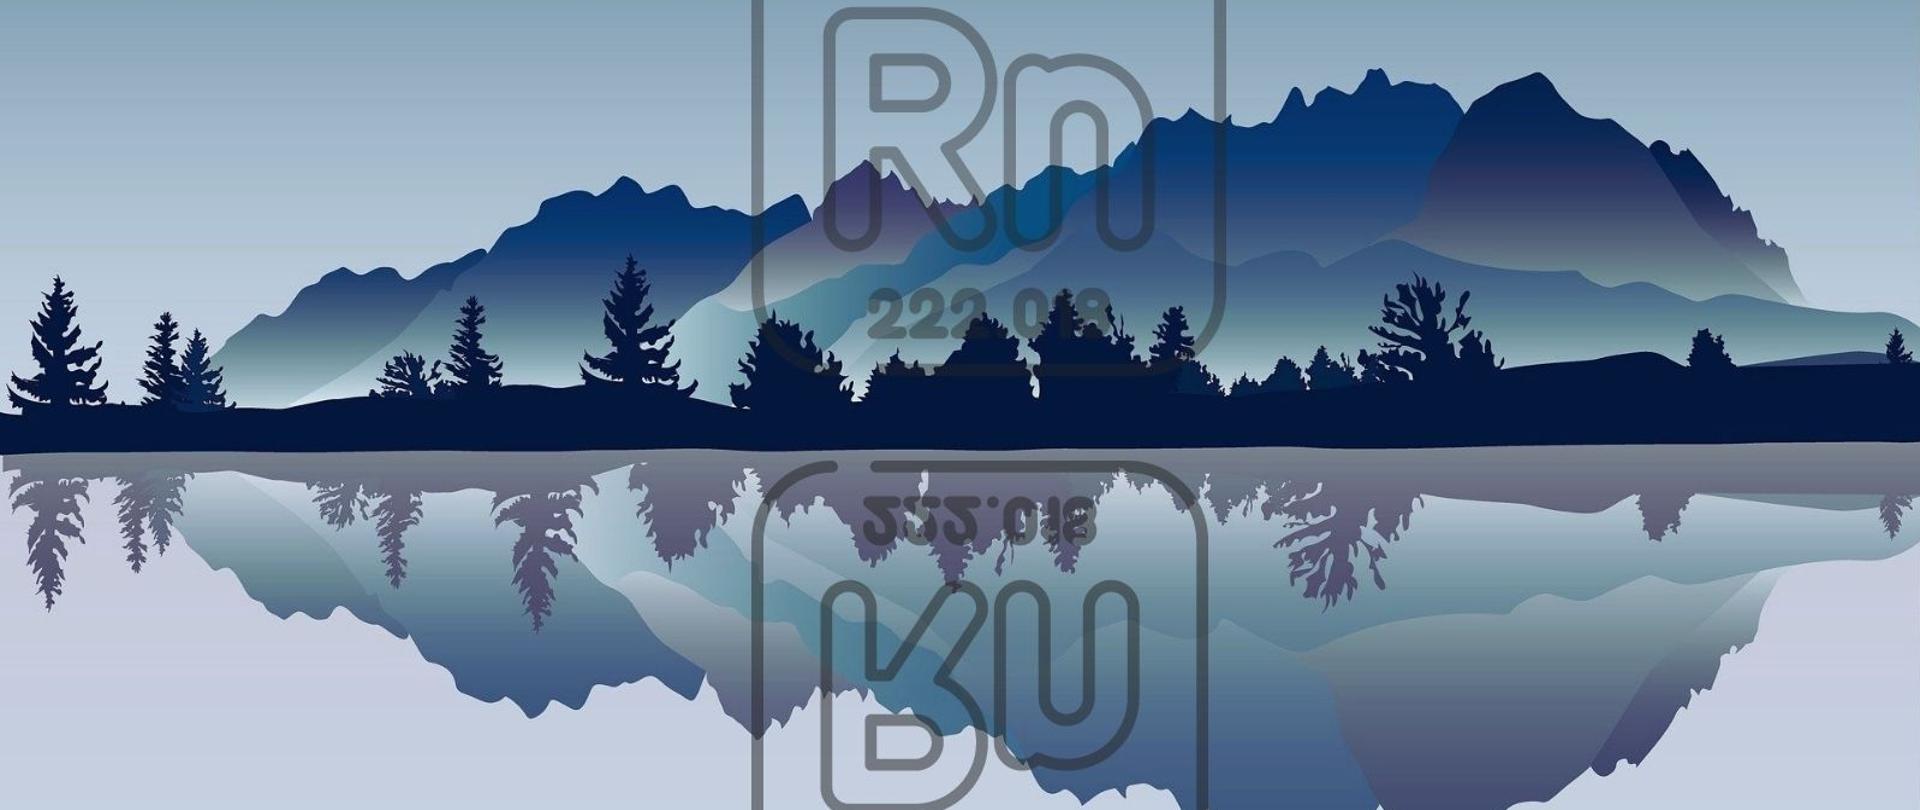 Grafika ilustruje wzgórze w kolorach niebieskim, granatowym i fioletowym na różowym tle. Wzgórze okalają drzewa przed którymi widoczna jest tafla jeziora. W tafli jeziora oraz na wzgórzu widoczny jest symbol radonu